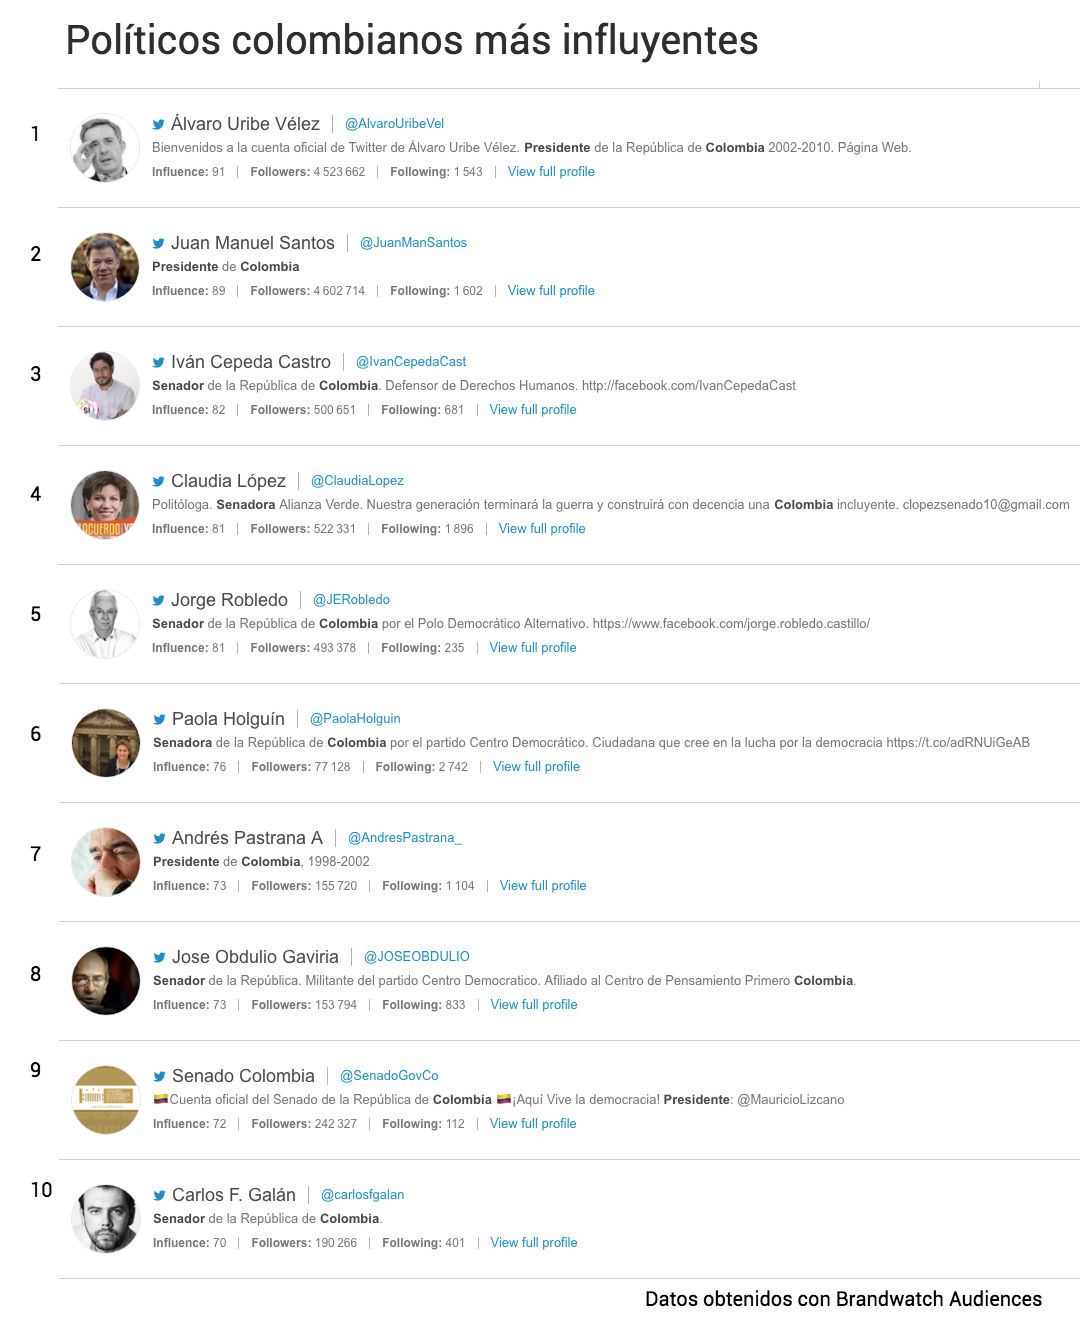 Los 10 políticos colombianos más influyentes en Twitter